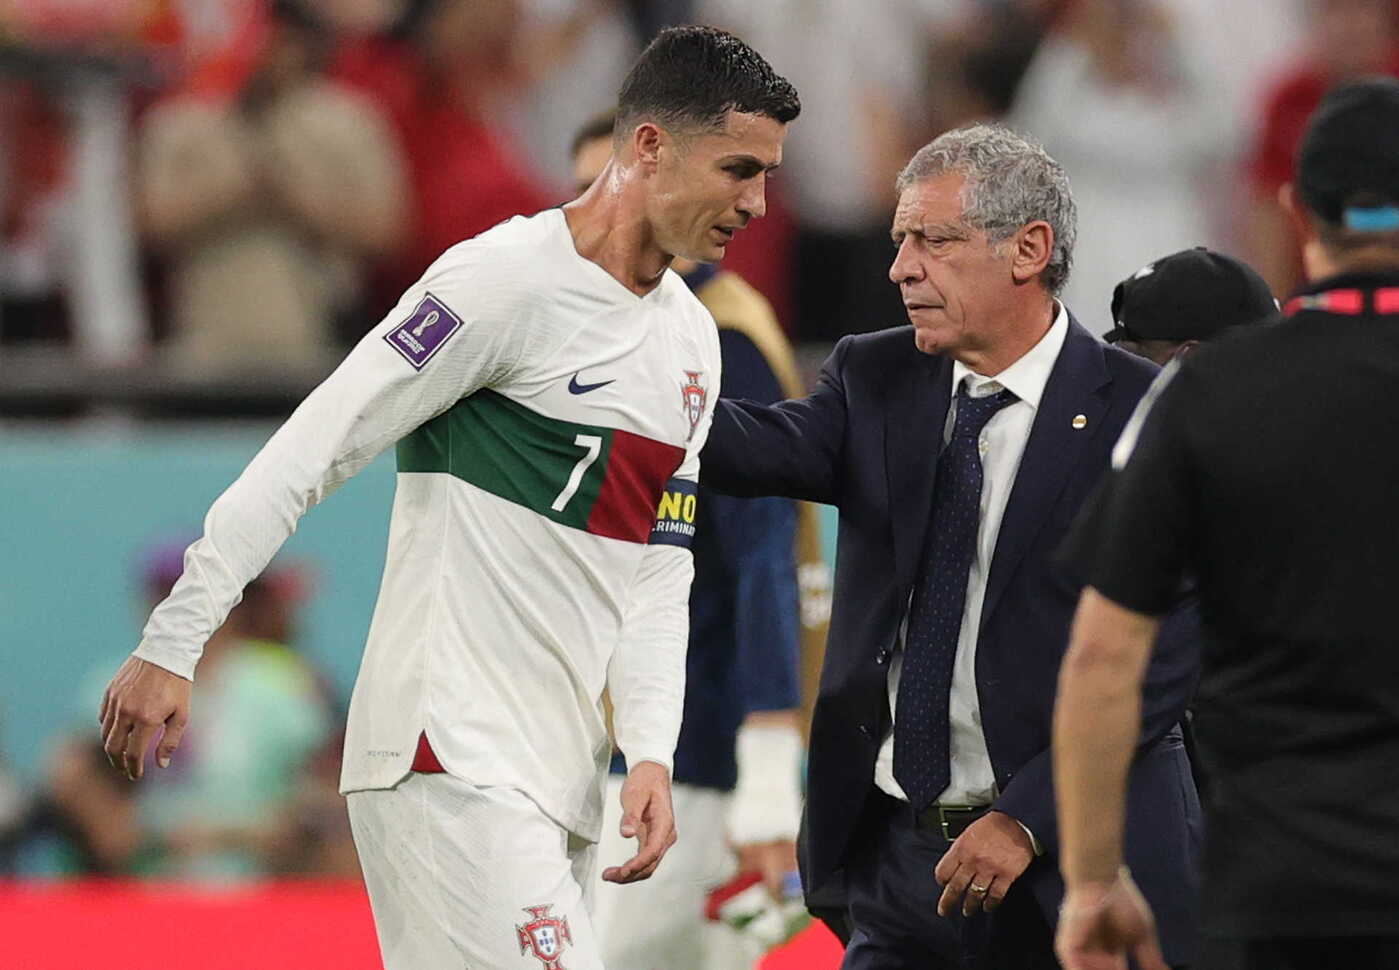 Chưa bao giờ Ronaldo khóc như vậy trên sân cỏ. Ảnh của anh trong World Cup sẽ khiến bạn đồng cảm với niềm đau thất bại và sự cố gắng không ngừng nghỉ của một ngôi sao bóng đá hàng đầu.